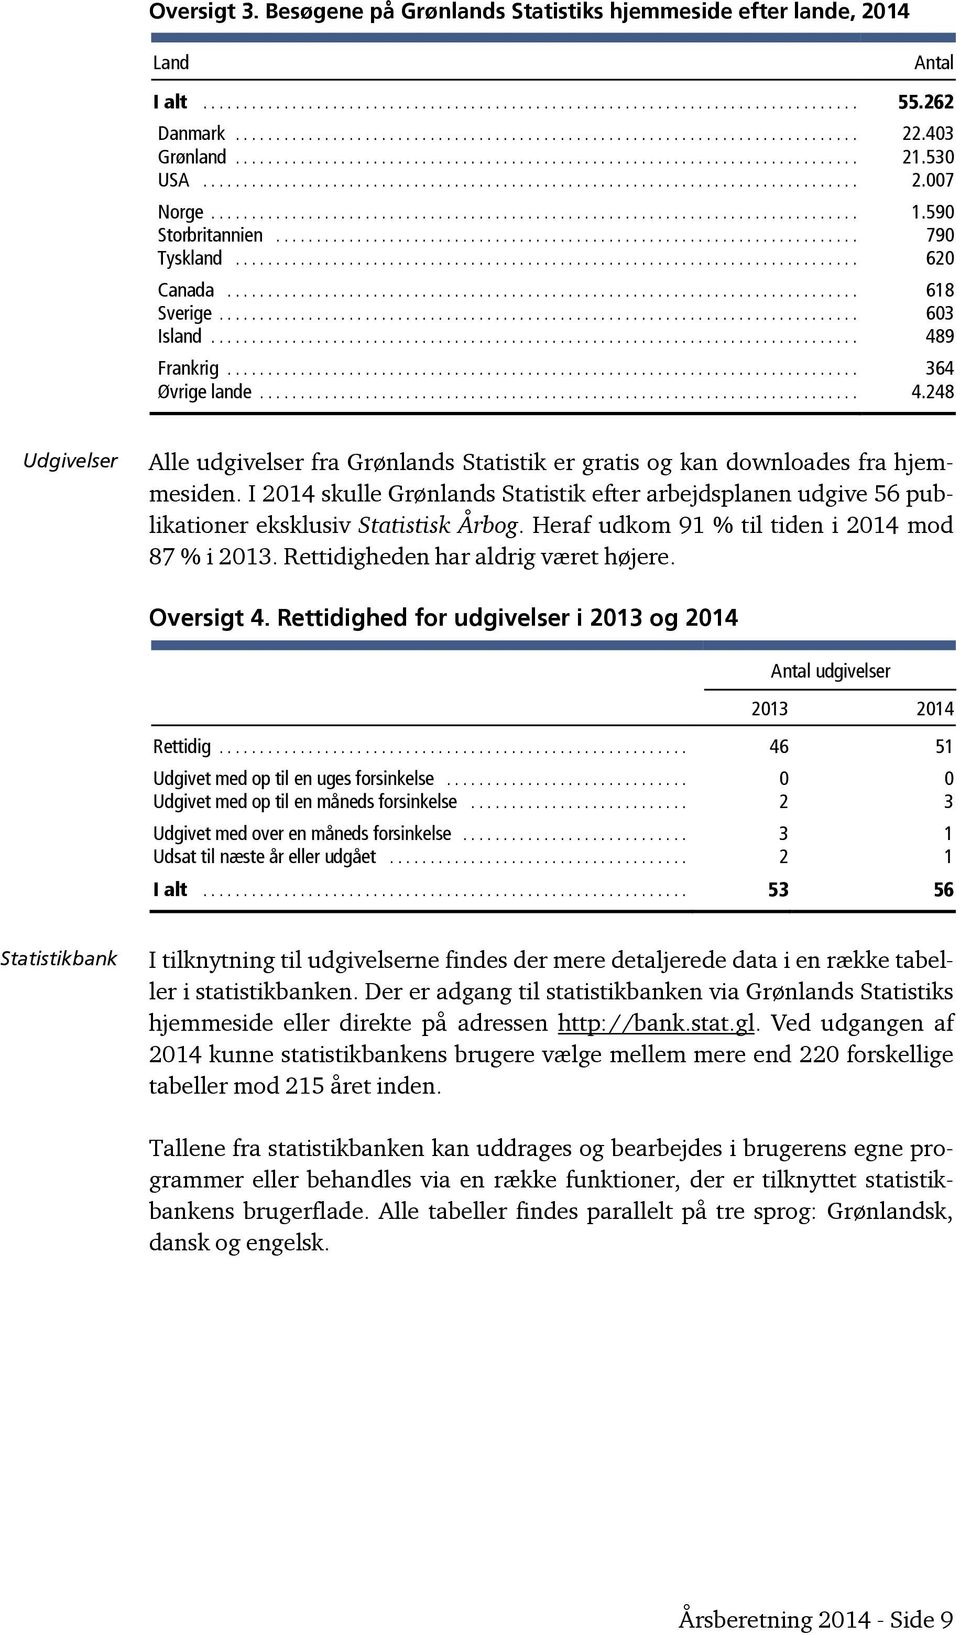 I 2014 skulle Grønlands Statistik efter arbejdsplanen udgive 56 publikationer eksklusiv Statistisk Årbog. Heraf udkom 91 % til tiden i 2014 mod 87 % i 2013. Rettidigheden har aldrig været højere.